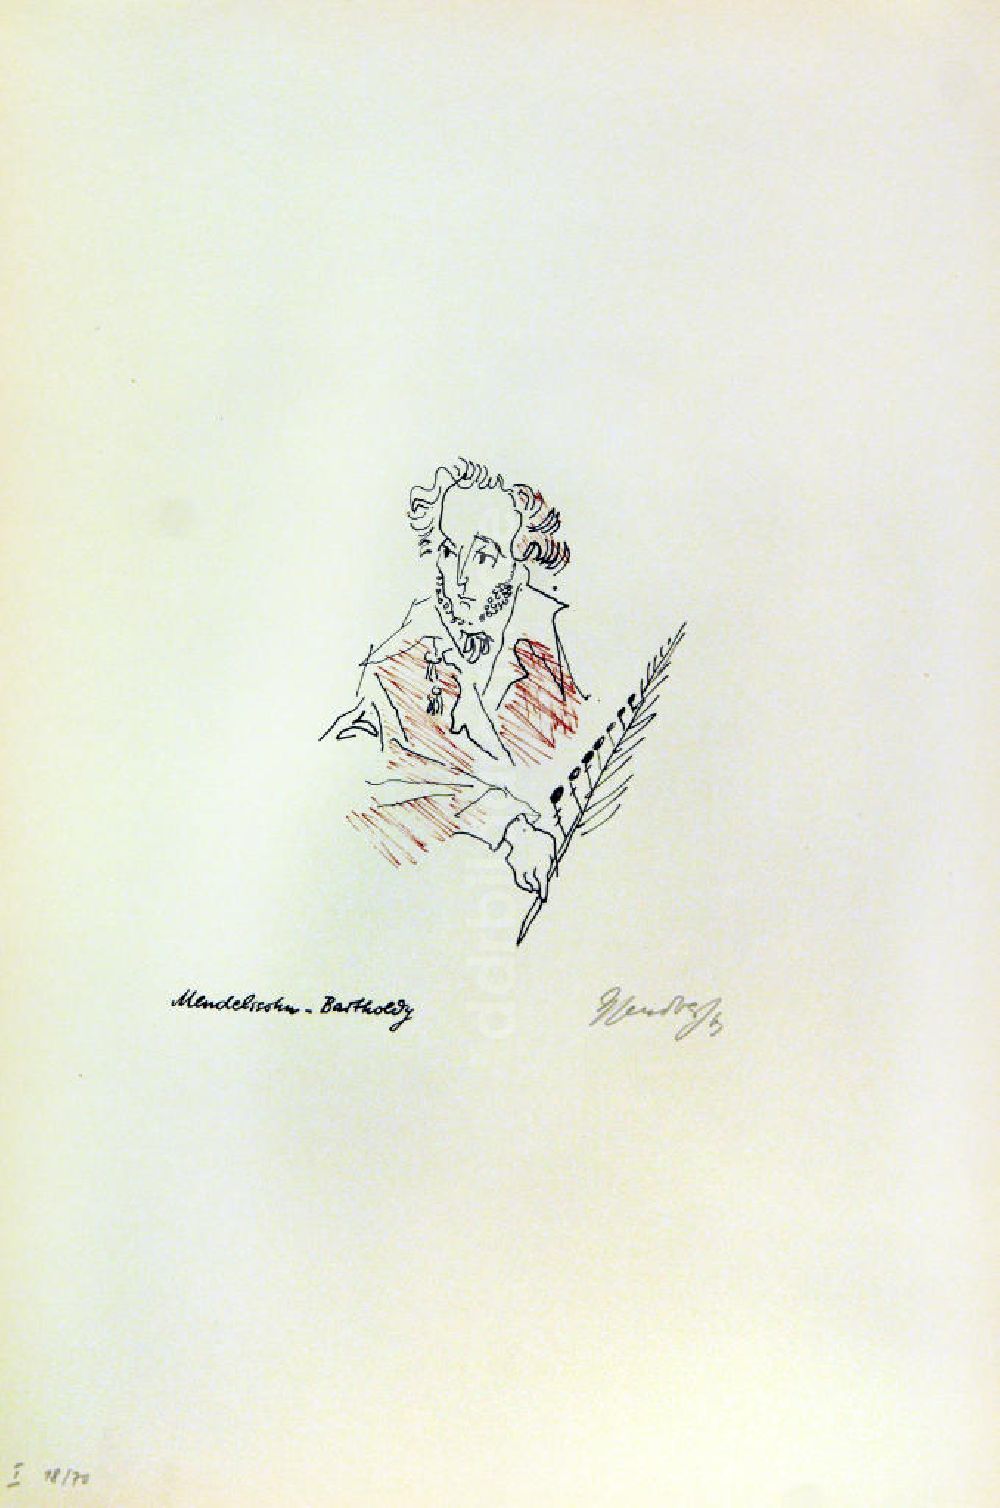 Berlin: Grafik von Herbert Sandberg über Felix Mendelssohn-Bartholdy 1963